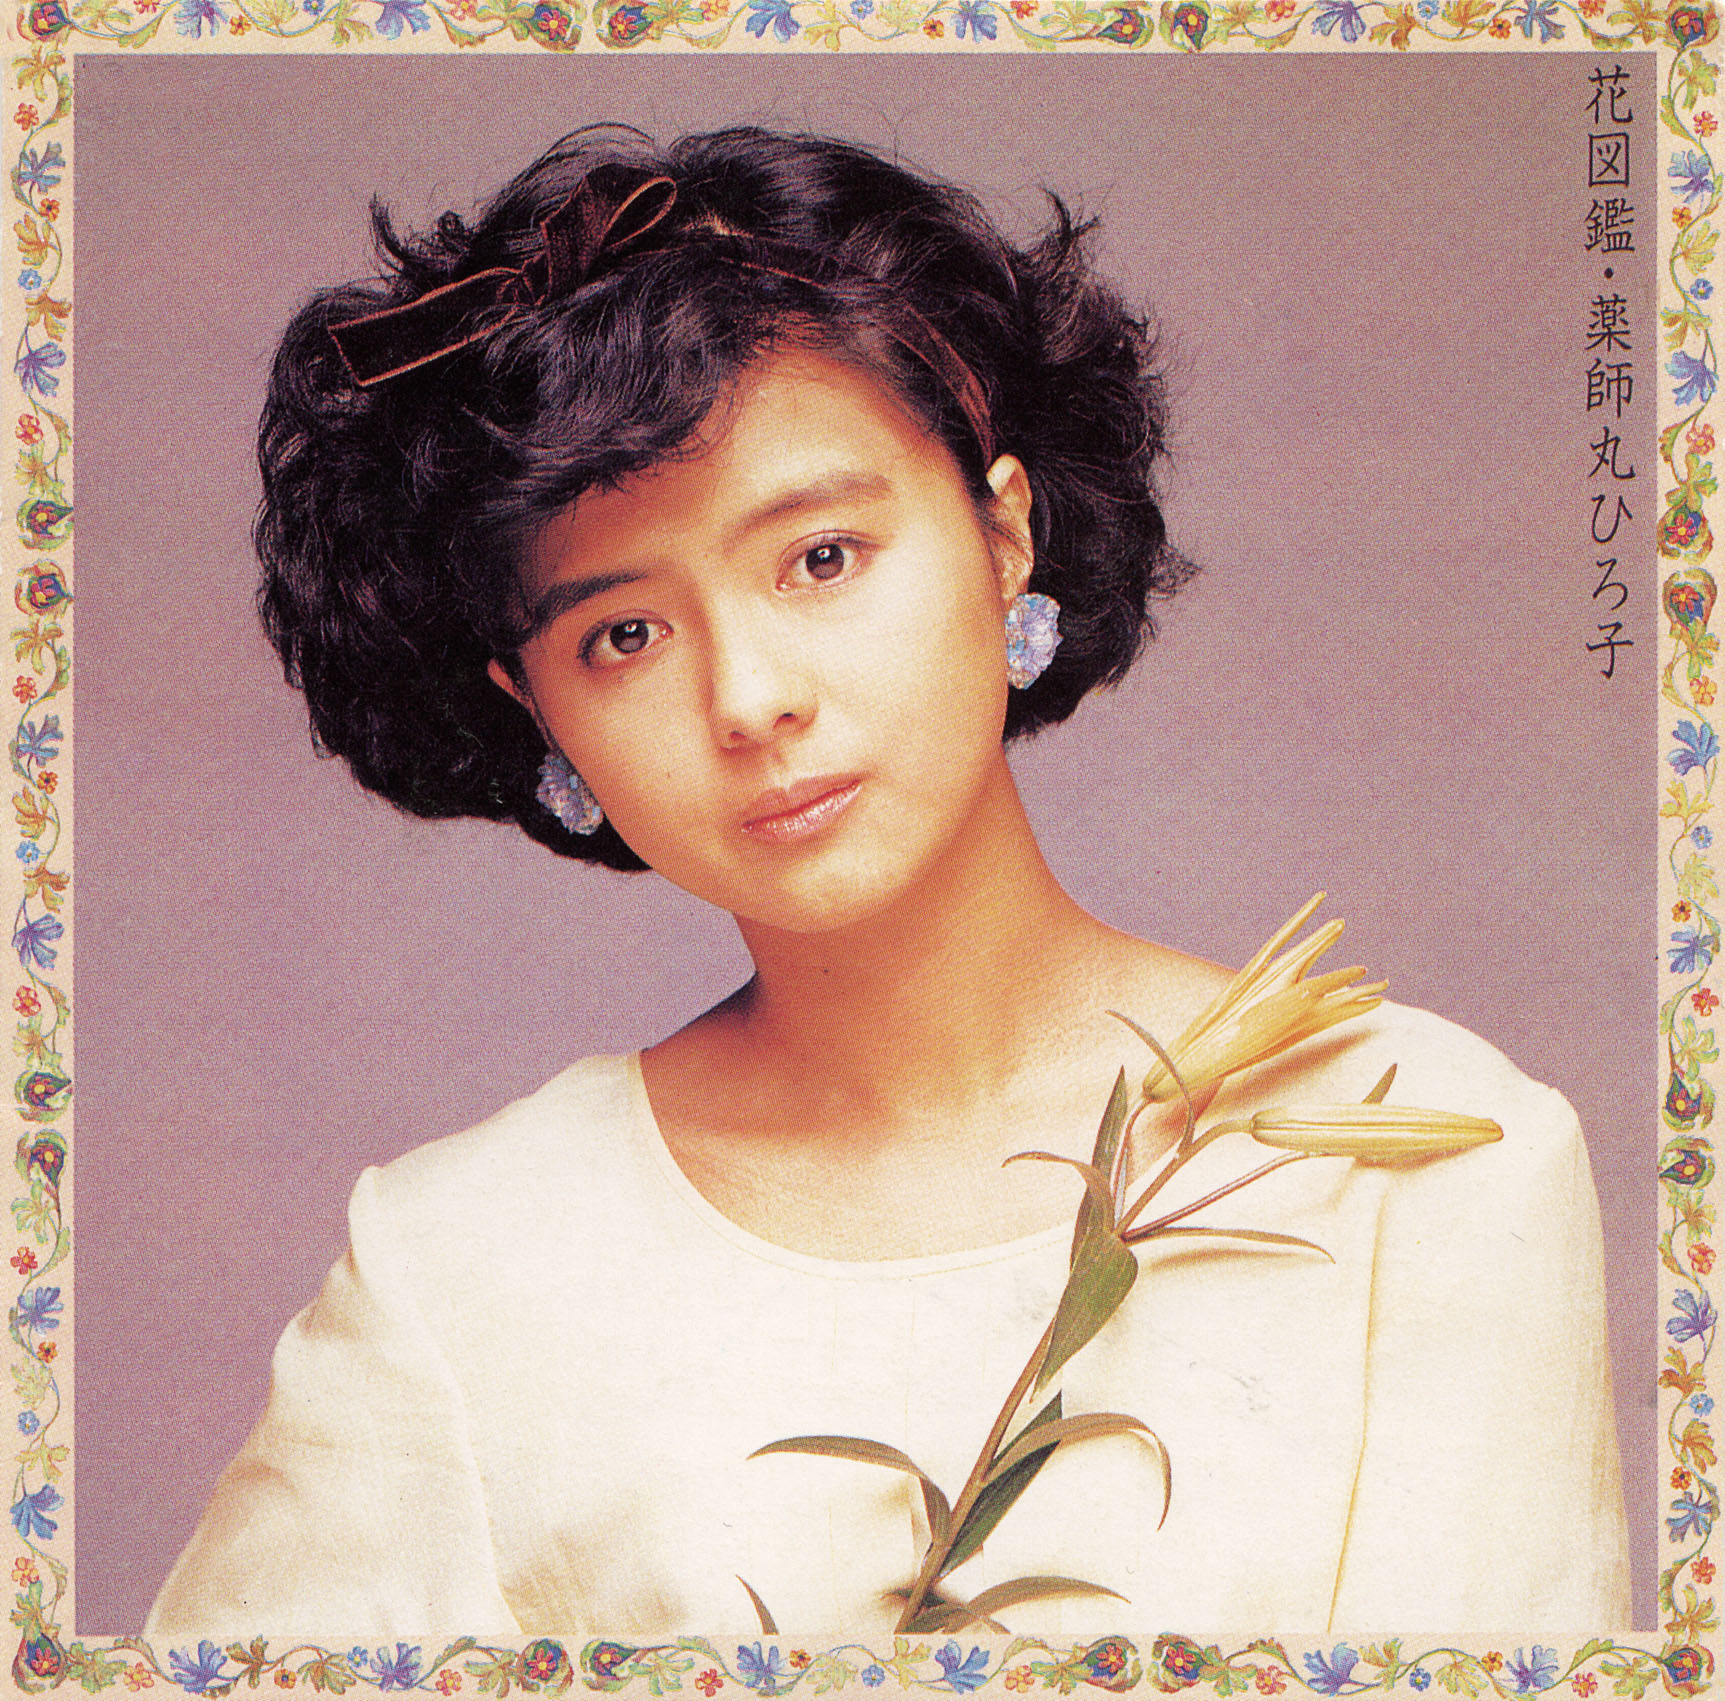 1988年4月6日Lover新品 薬師丸ひろ子 40th Anniversary BOX【限定盤】